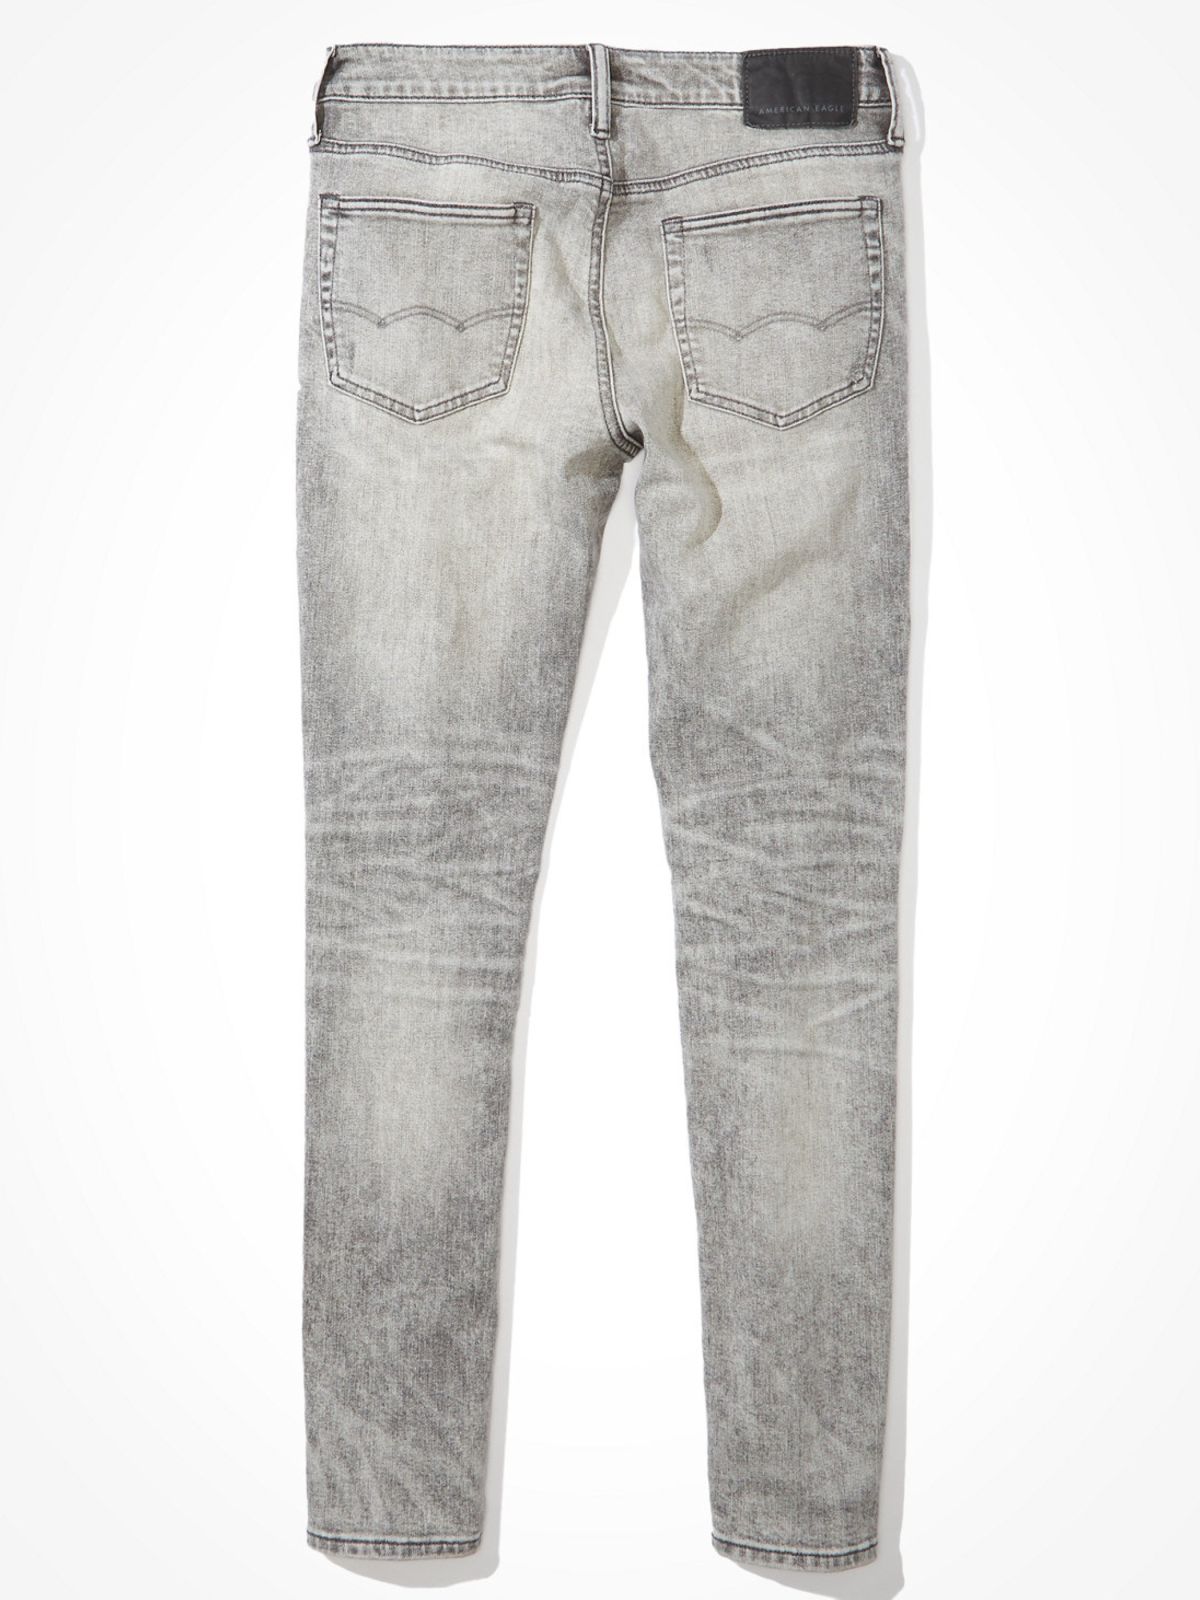  ג'ינס סקיני עם שיפשופים של AMERICAN EAGLE